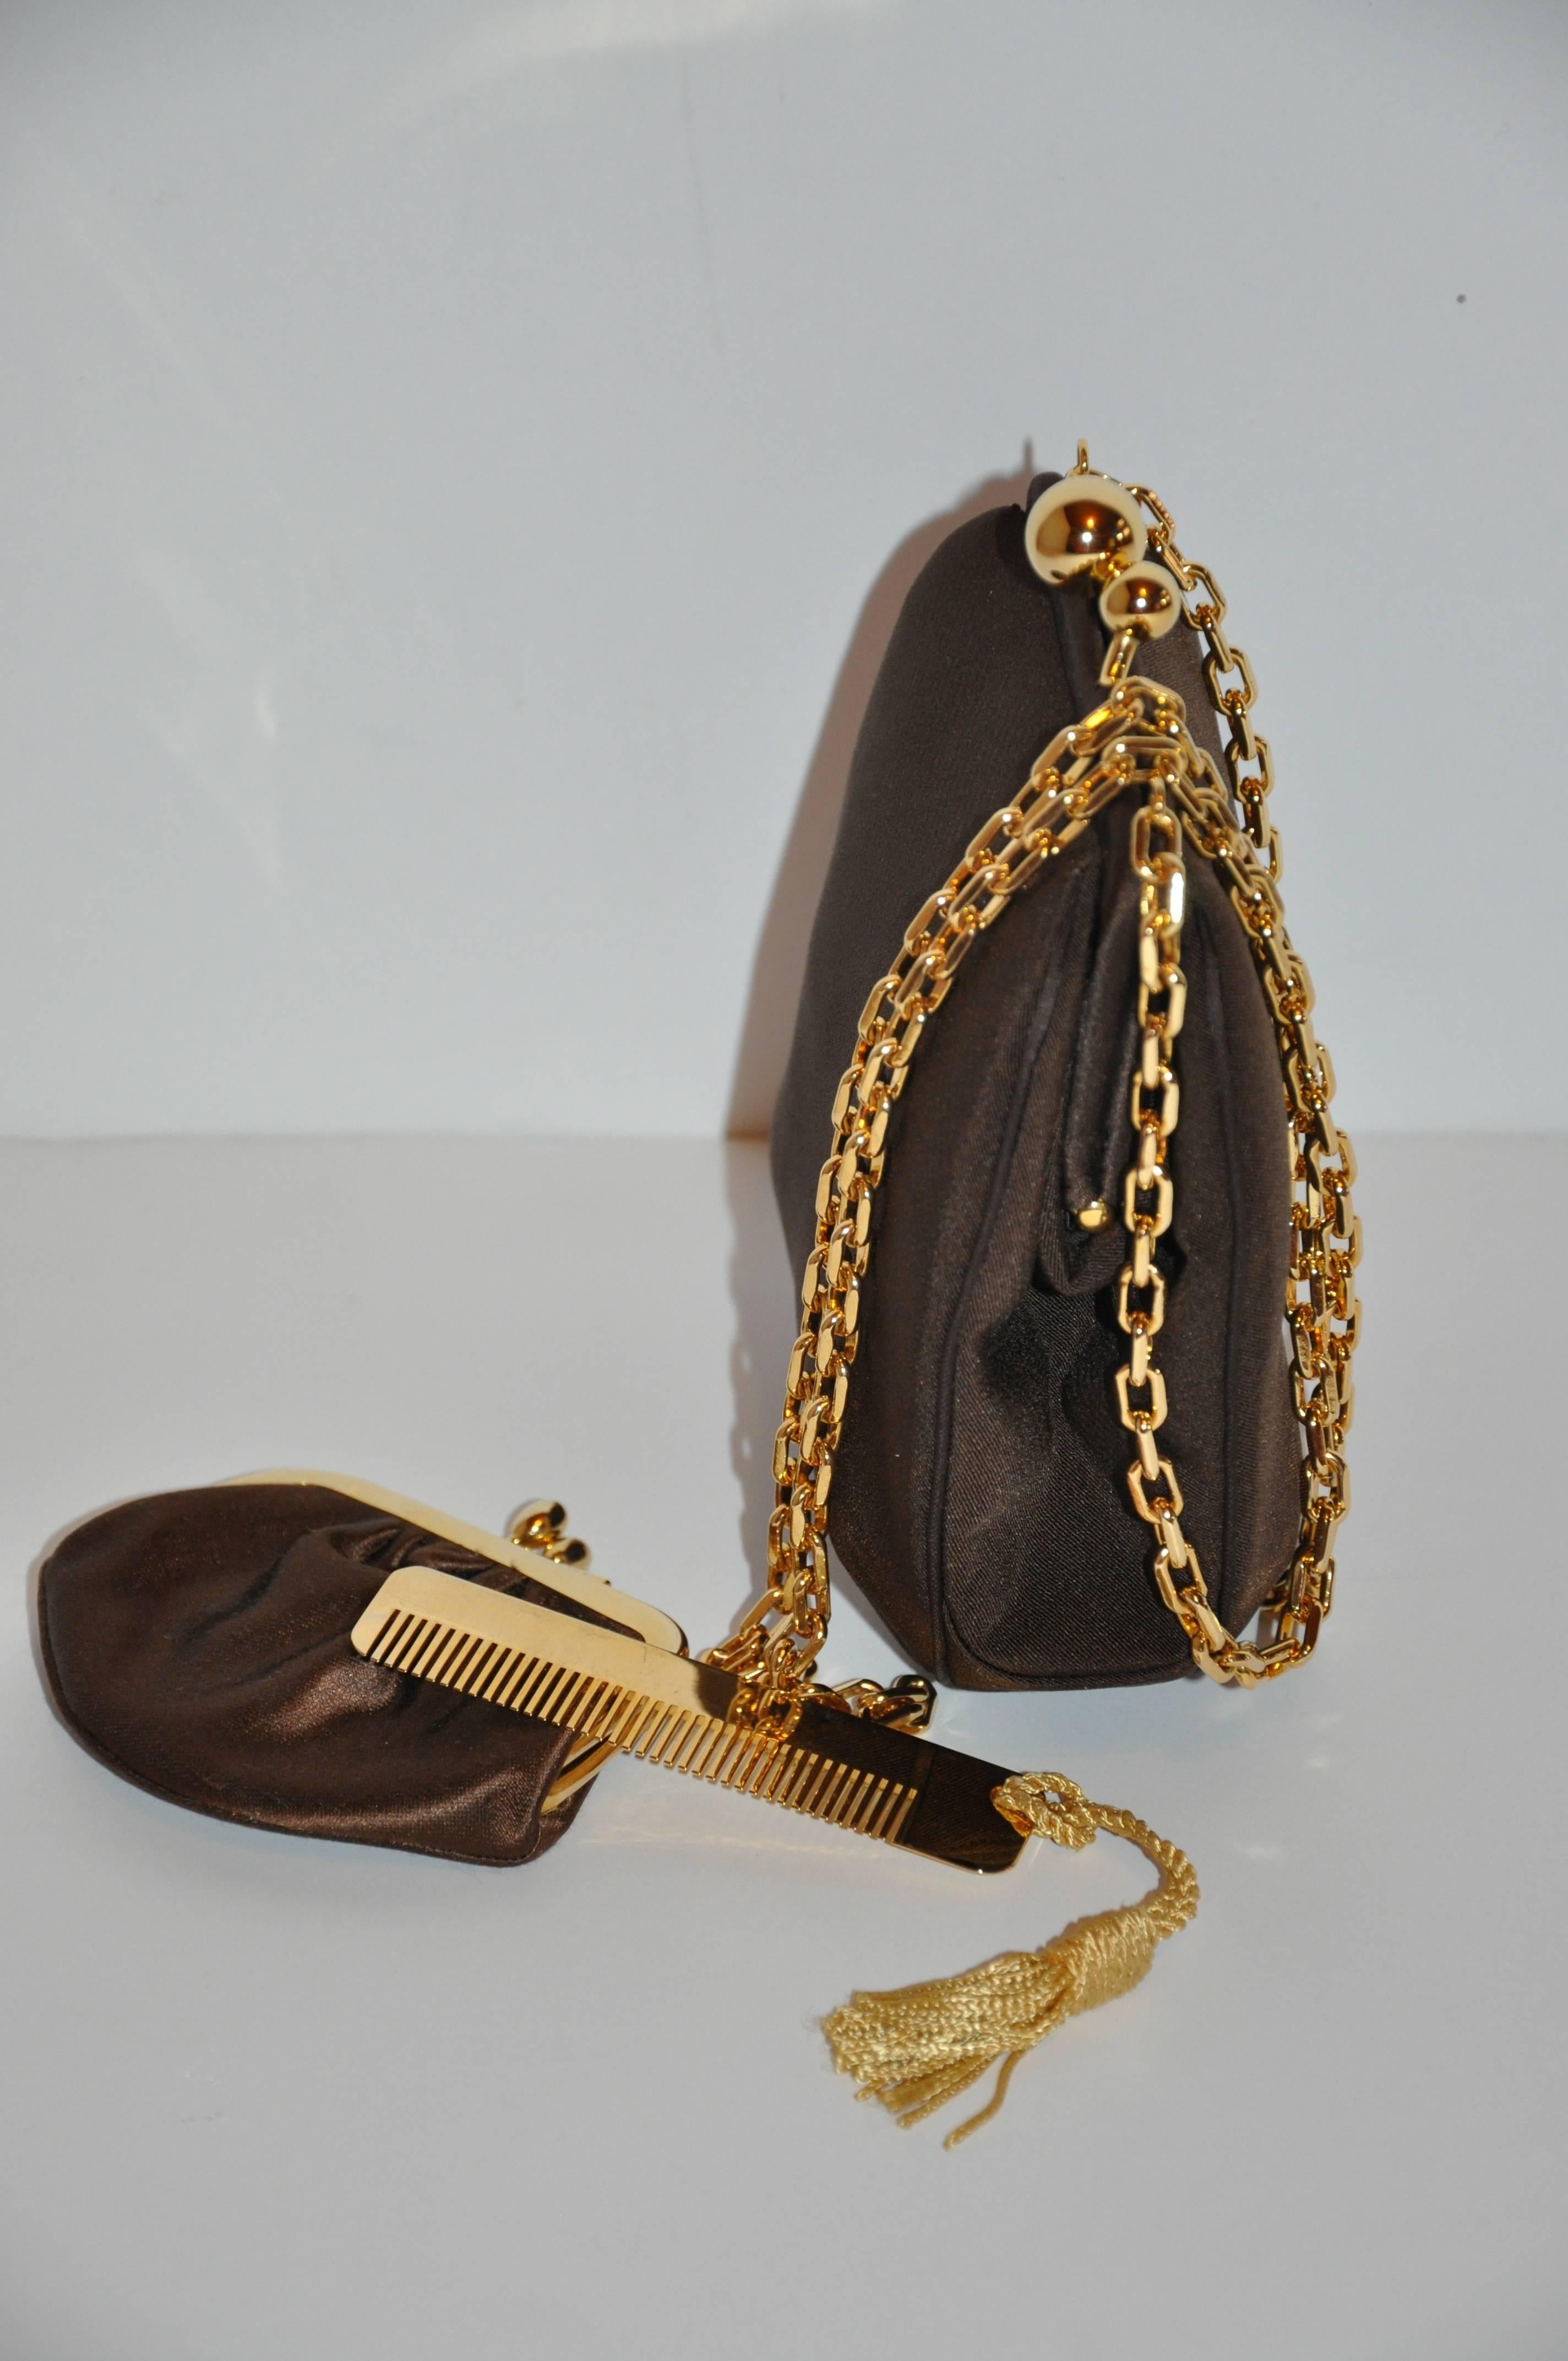         Le sac à bandoulière en soie marron coco texturée de Judith Leiber, à la fois fantaisiste et élégant, est rehaussé d'éléments en or vermeil. L'intérieur entièrement doublé est associé à un peigne en ferrures dorées qui est agrémenté d'un